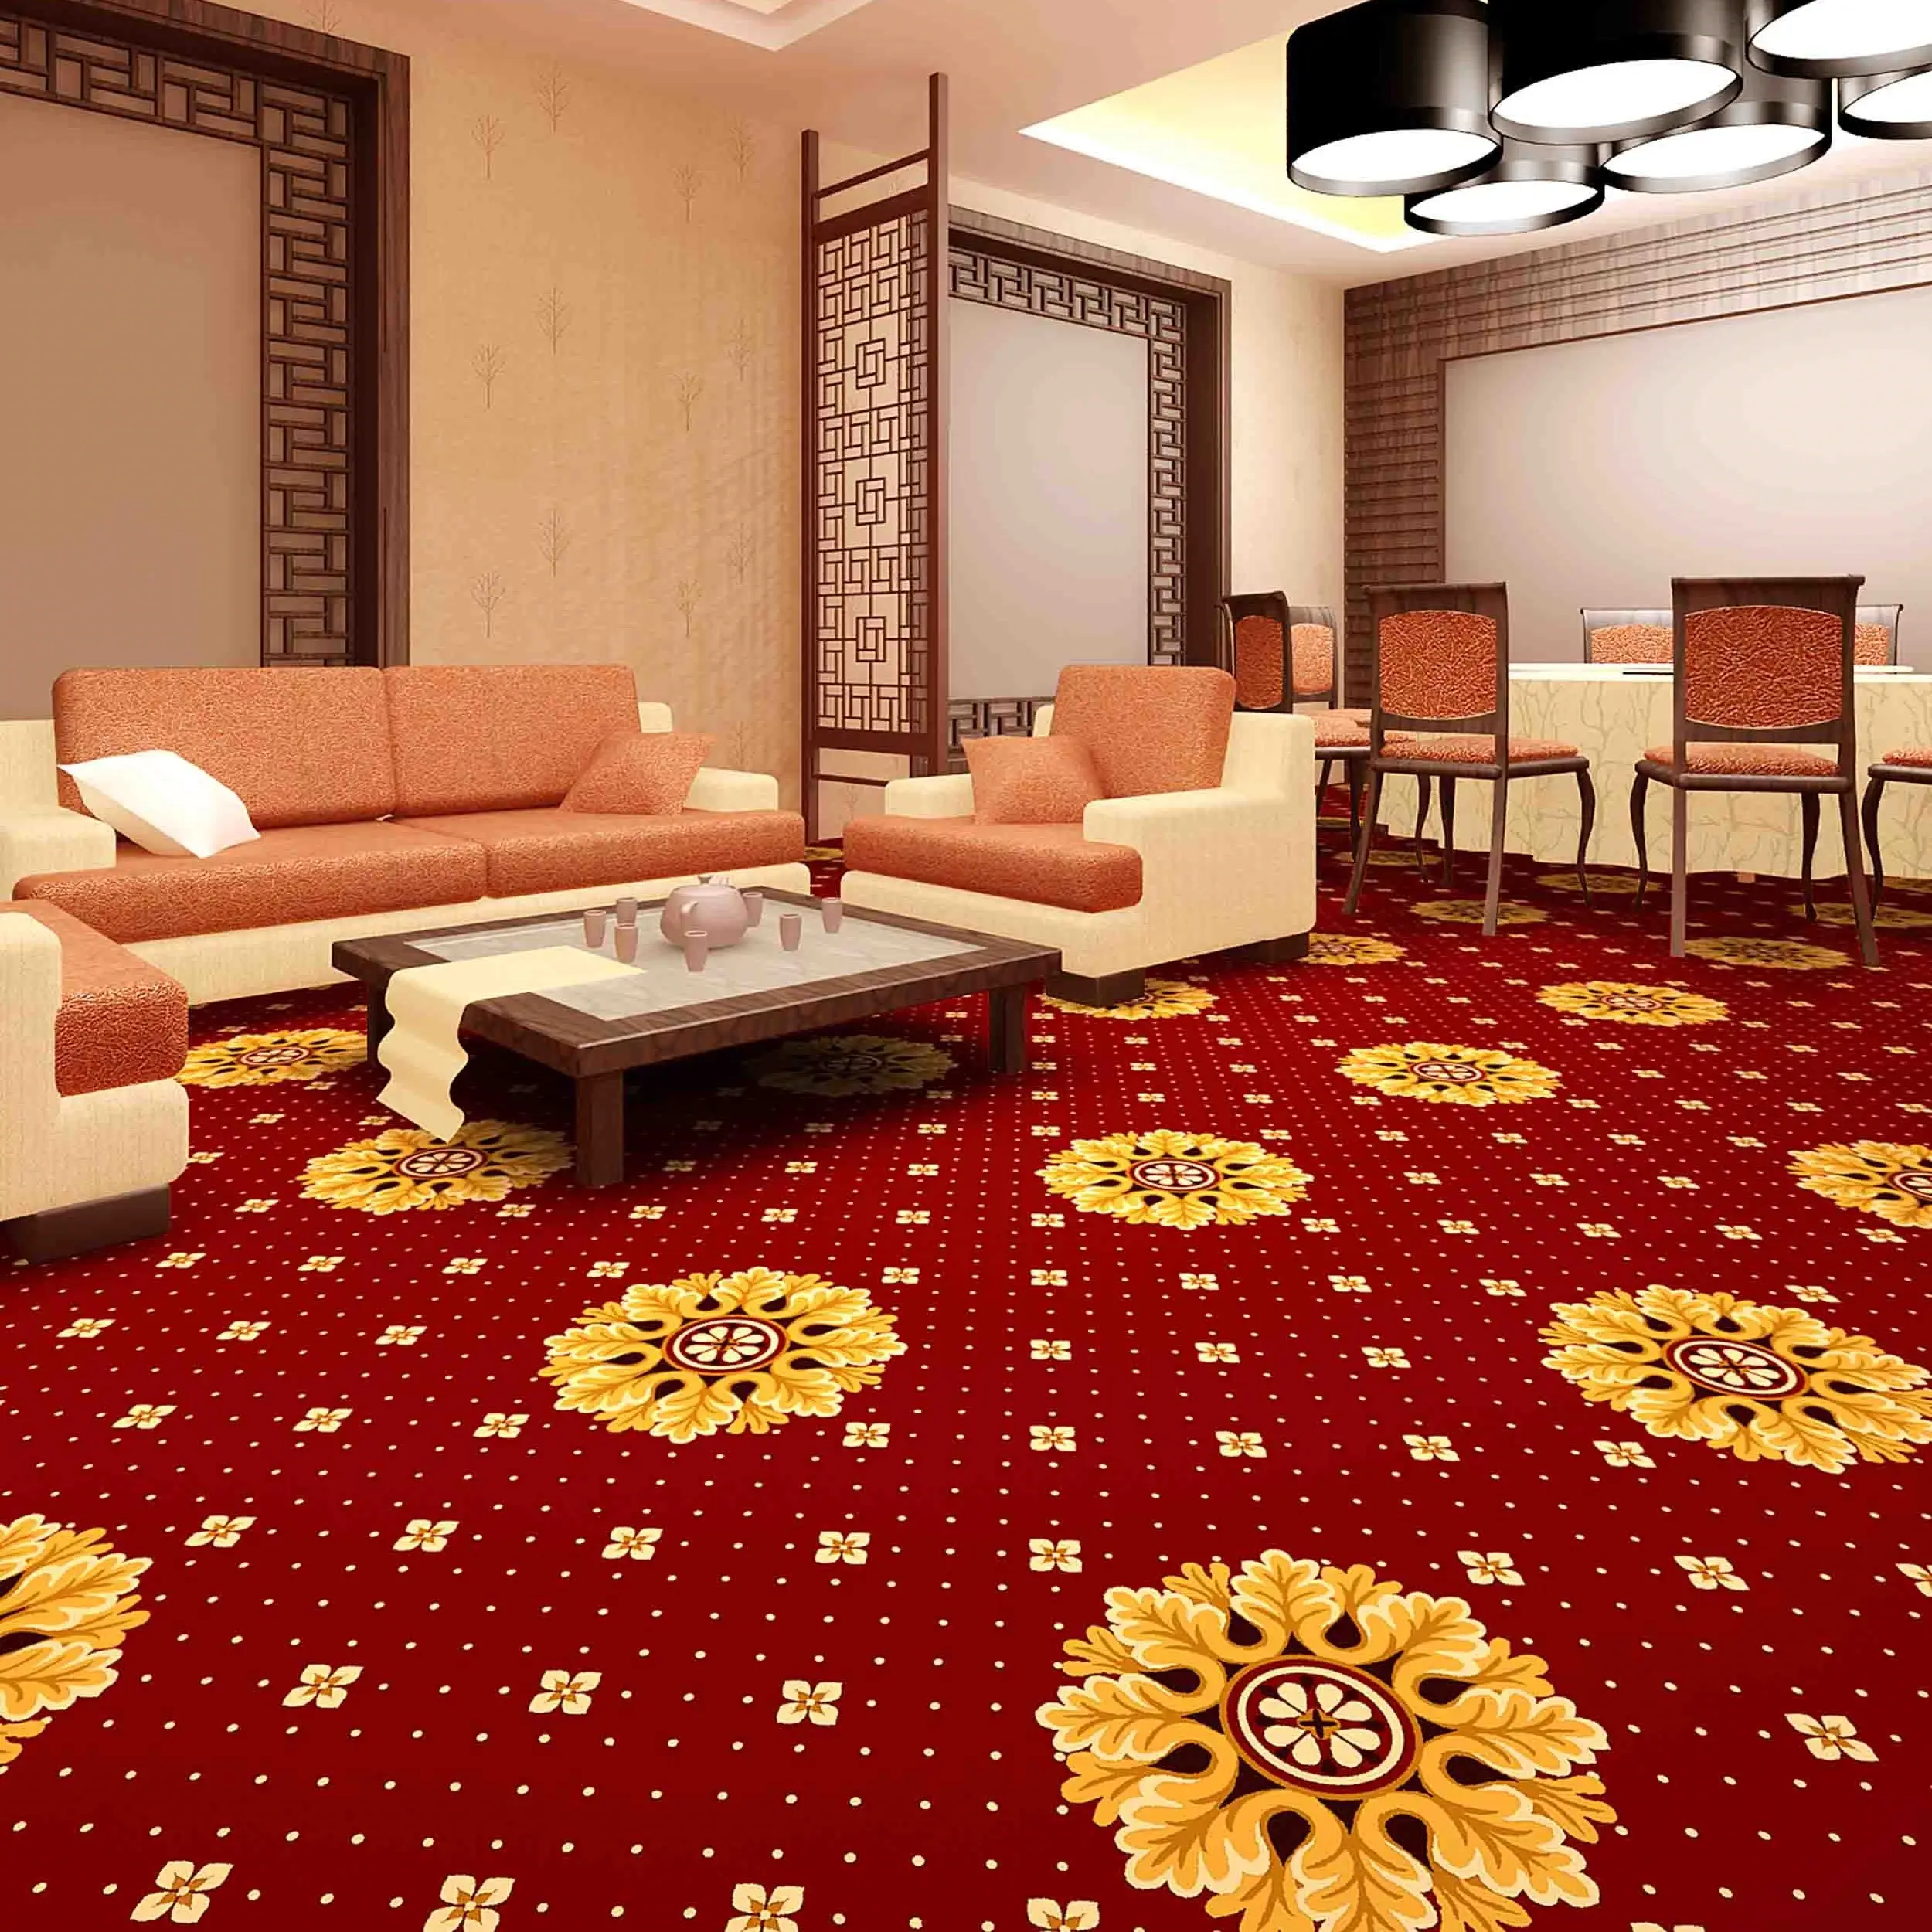 Der exquisite blumenteppich kann für kommerzielle Hotels und Restaurants angepasst werden.